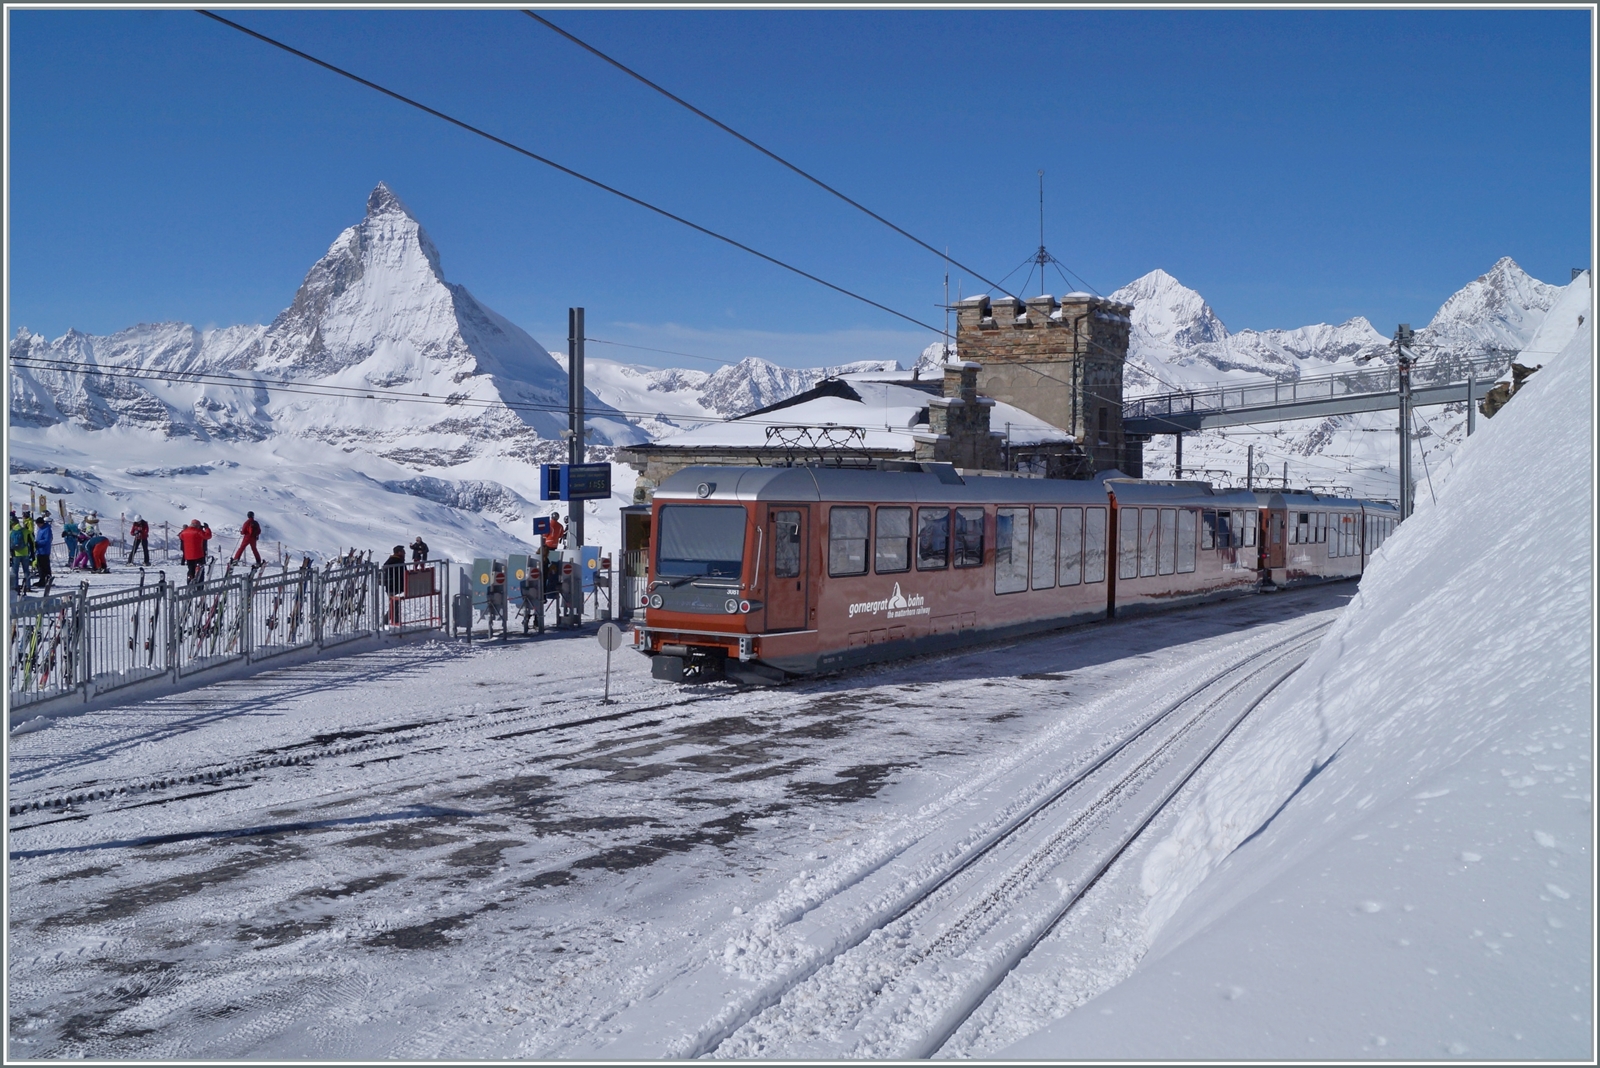 Der Bahnhof Gornergrat, 3089 müM mit dem von Zermatt her angekommenen GGB Bhe 4/6 3081 mit einem weiteren Triebzug. Im Hintergrund das Matterhorn, welches auch die Grenze zu Italien markiert; dahinter liegt das Aostatal. 

27. Februar 2014